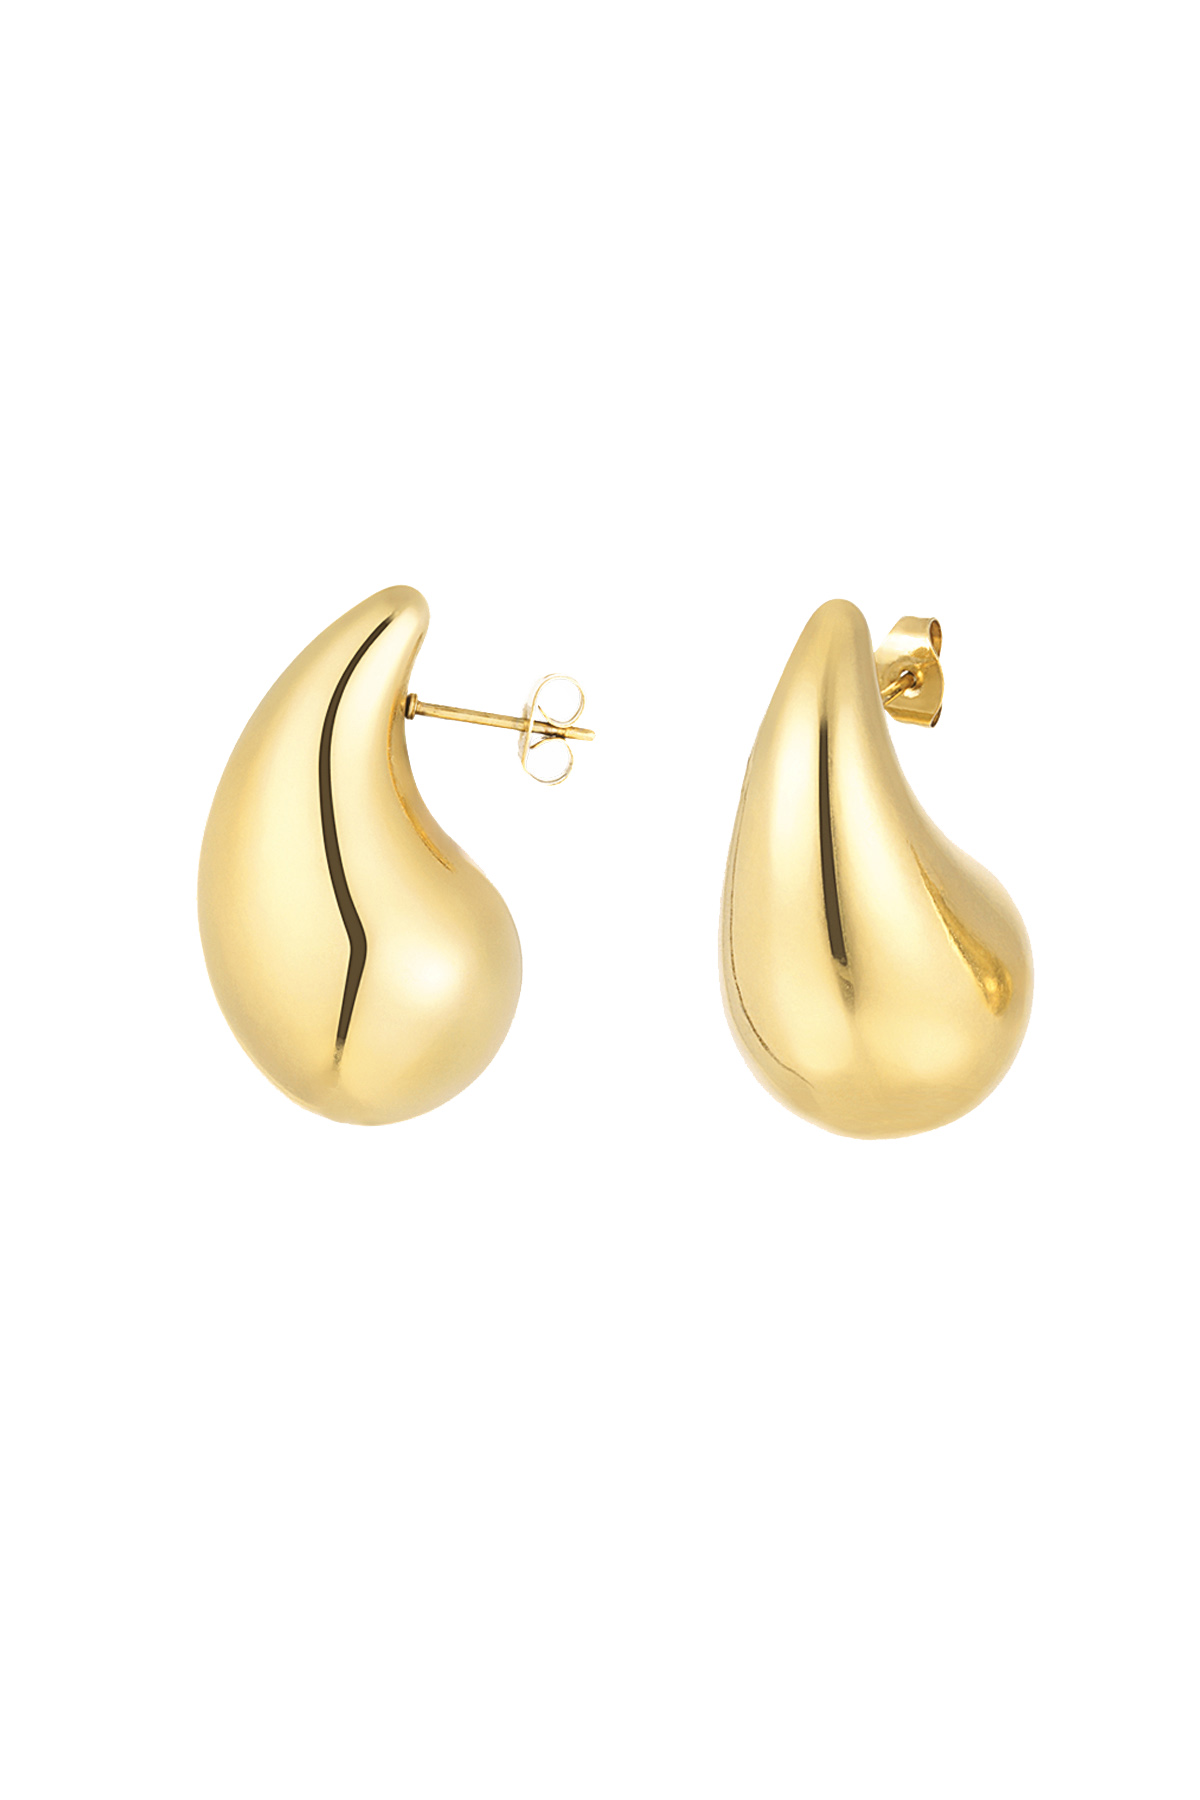 Drop earrings medium - gold